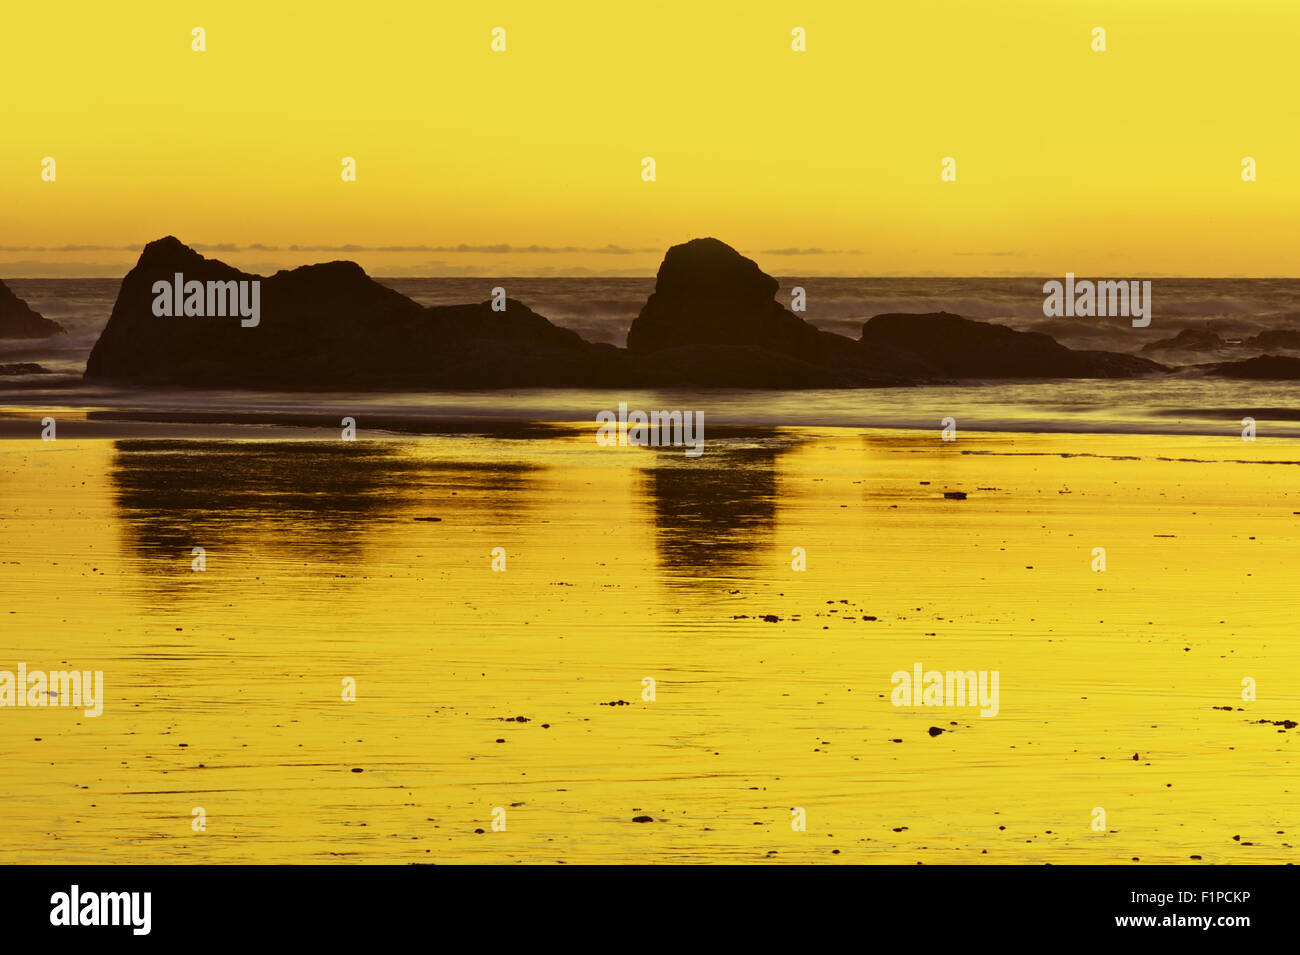 Paysage au coucher du soleil de l'océan - Plage de sable avec des formations de roche. Collection de Photos de la nature. Banque D'Images